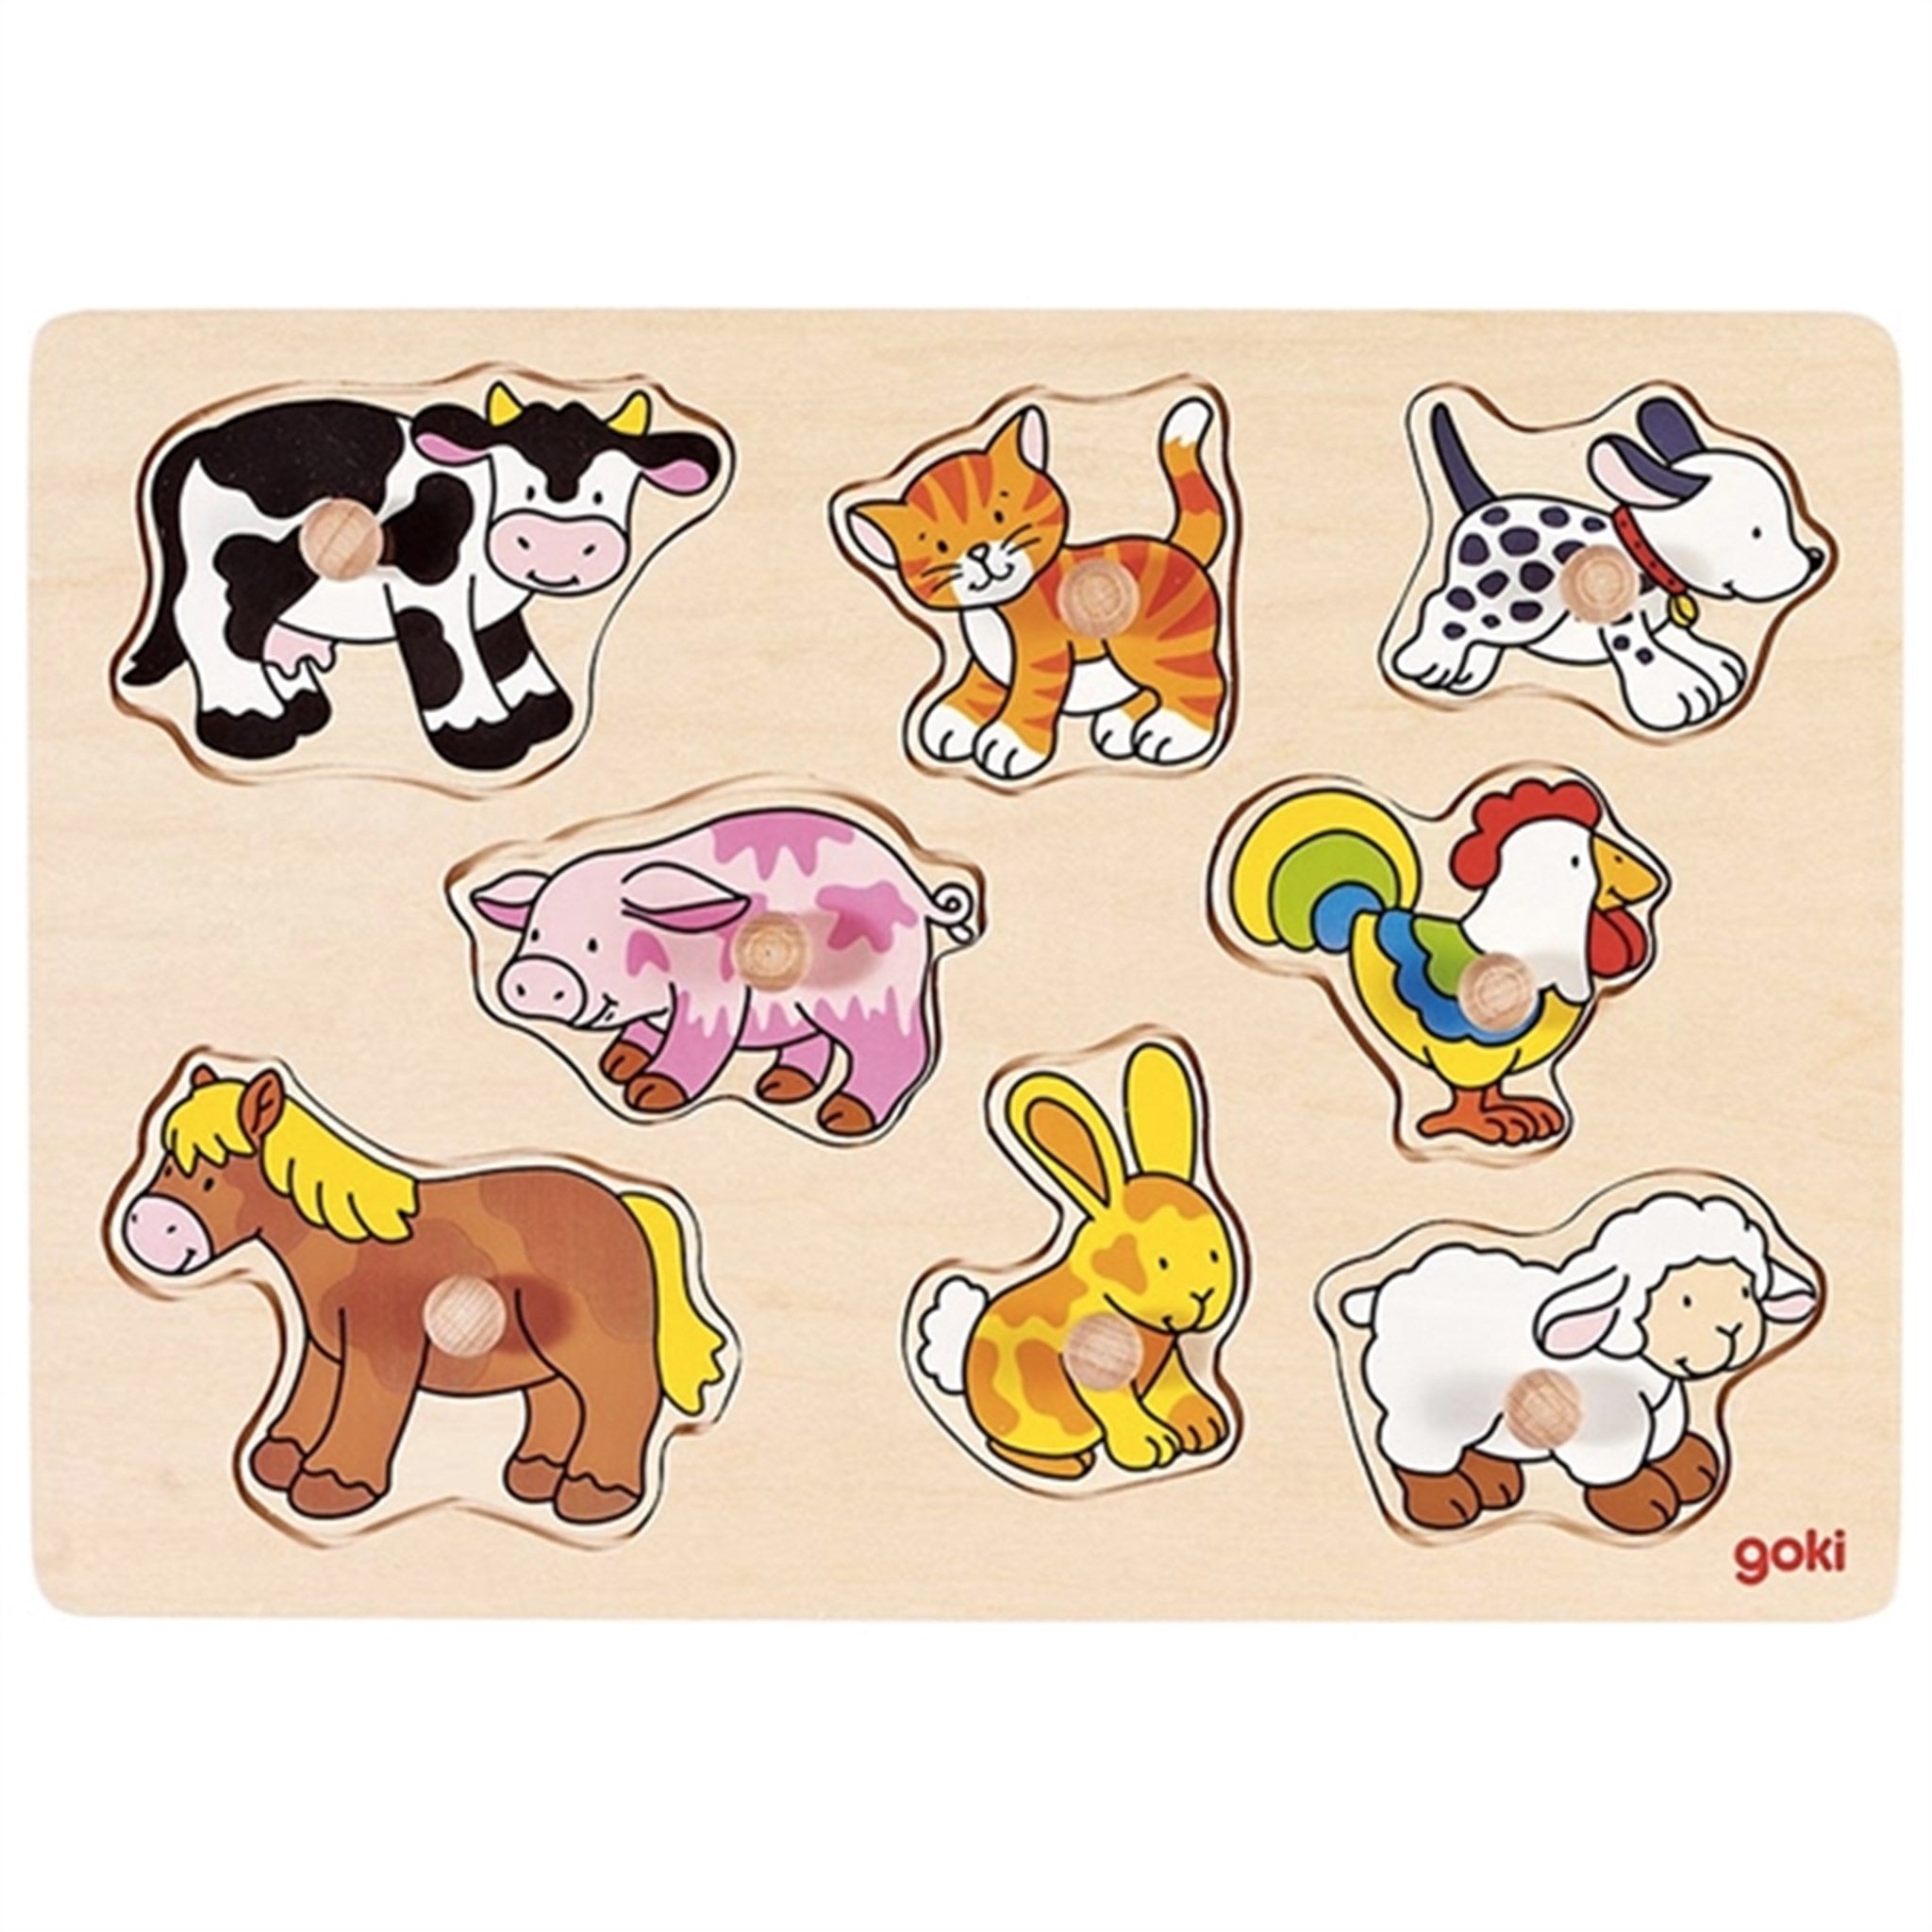 Goki Puzzle - Farm Animals